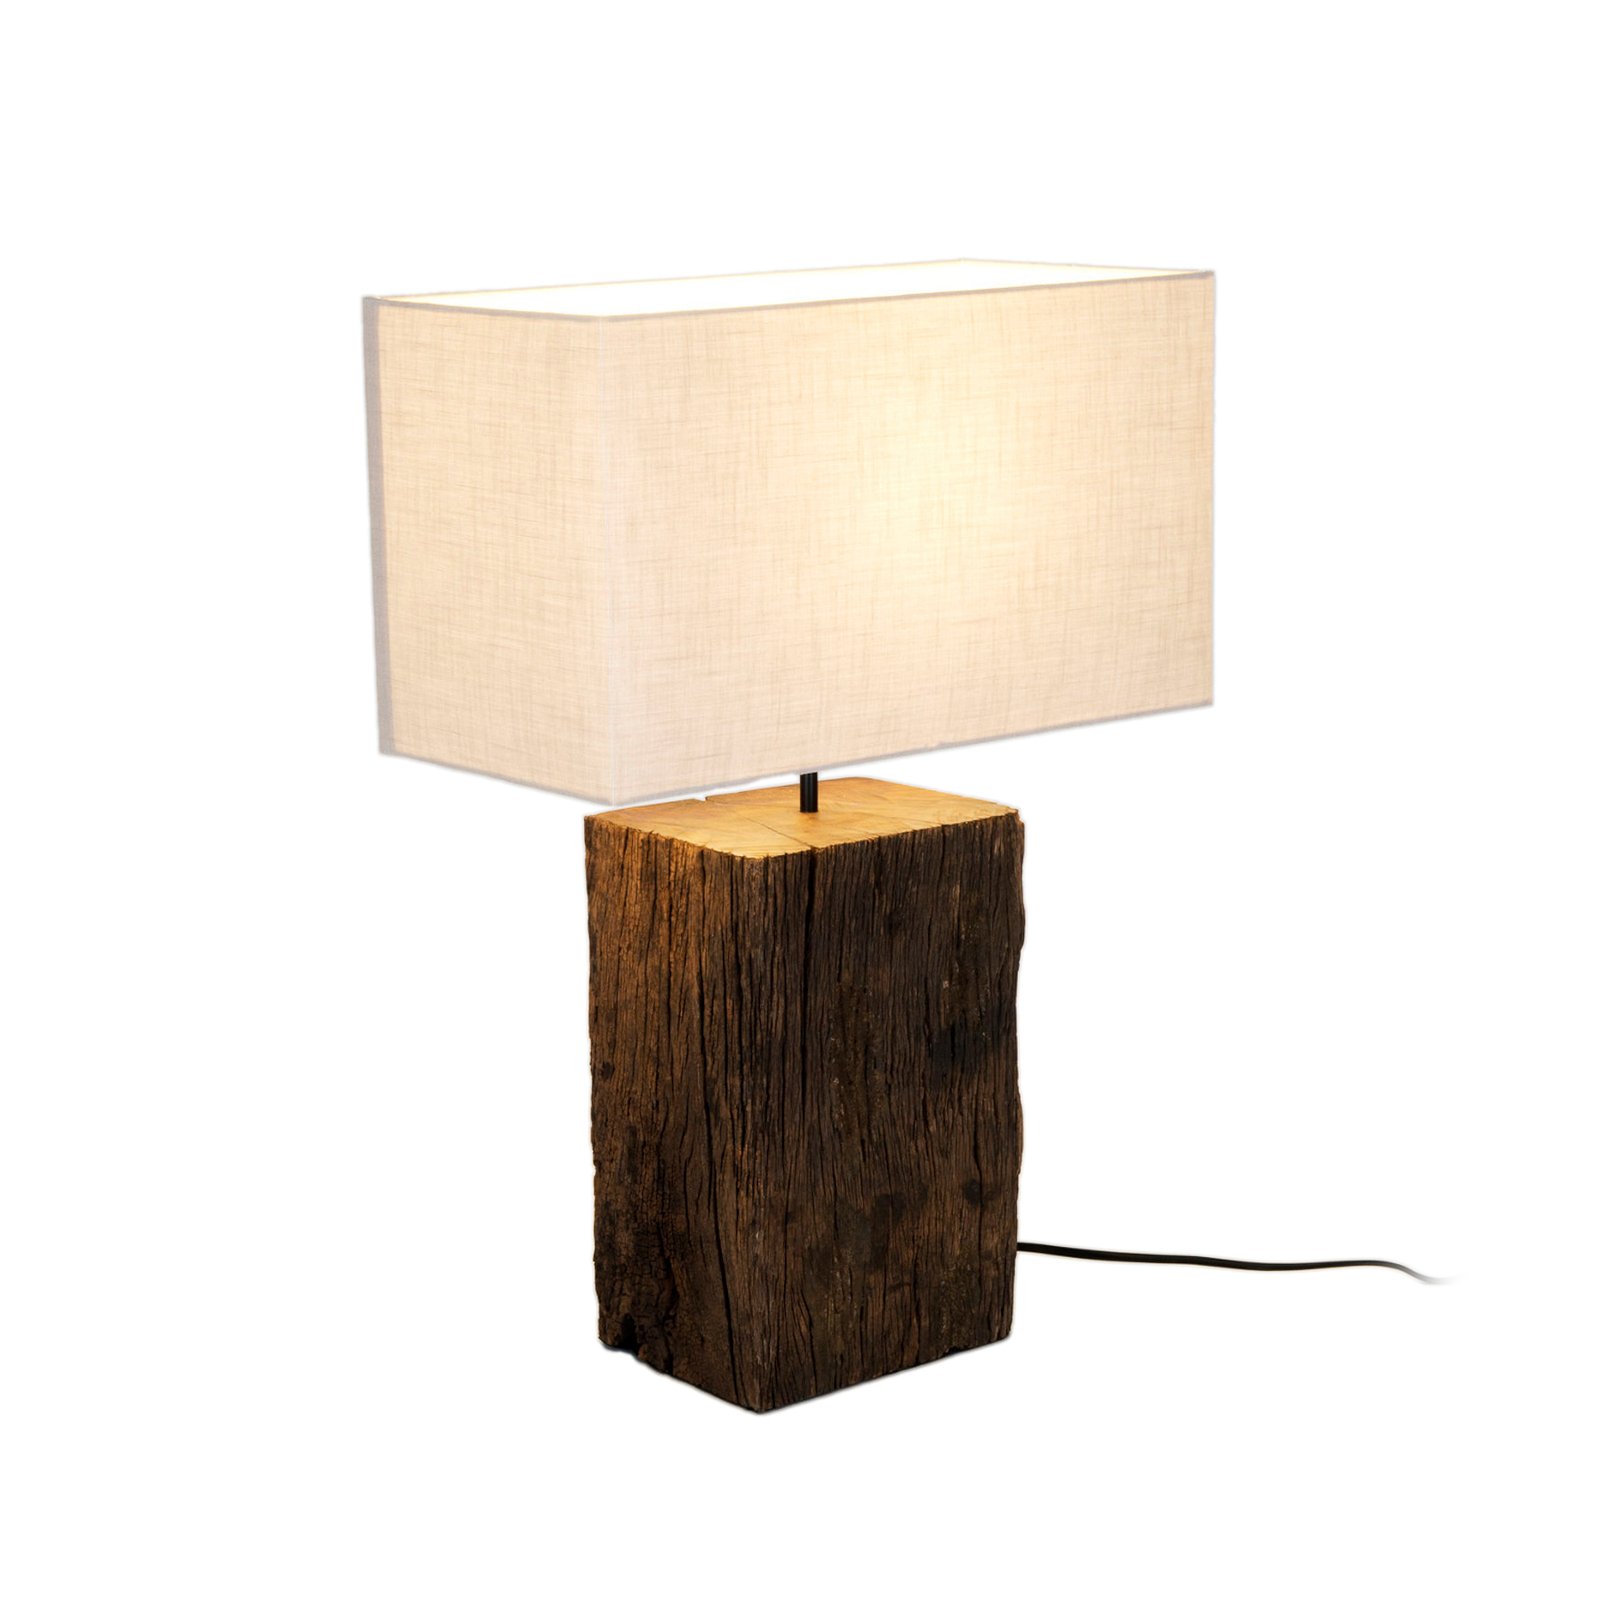 Montecristo bordlampe, træfarvet/beige, højde 59 cm, træ